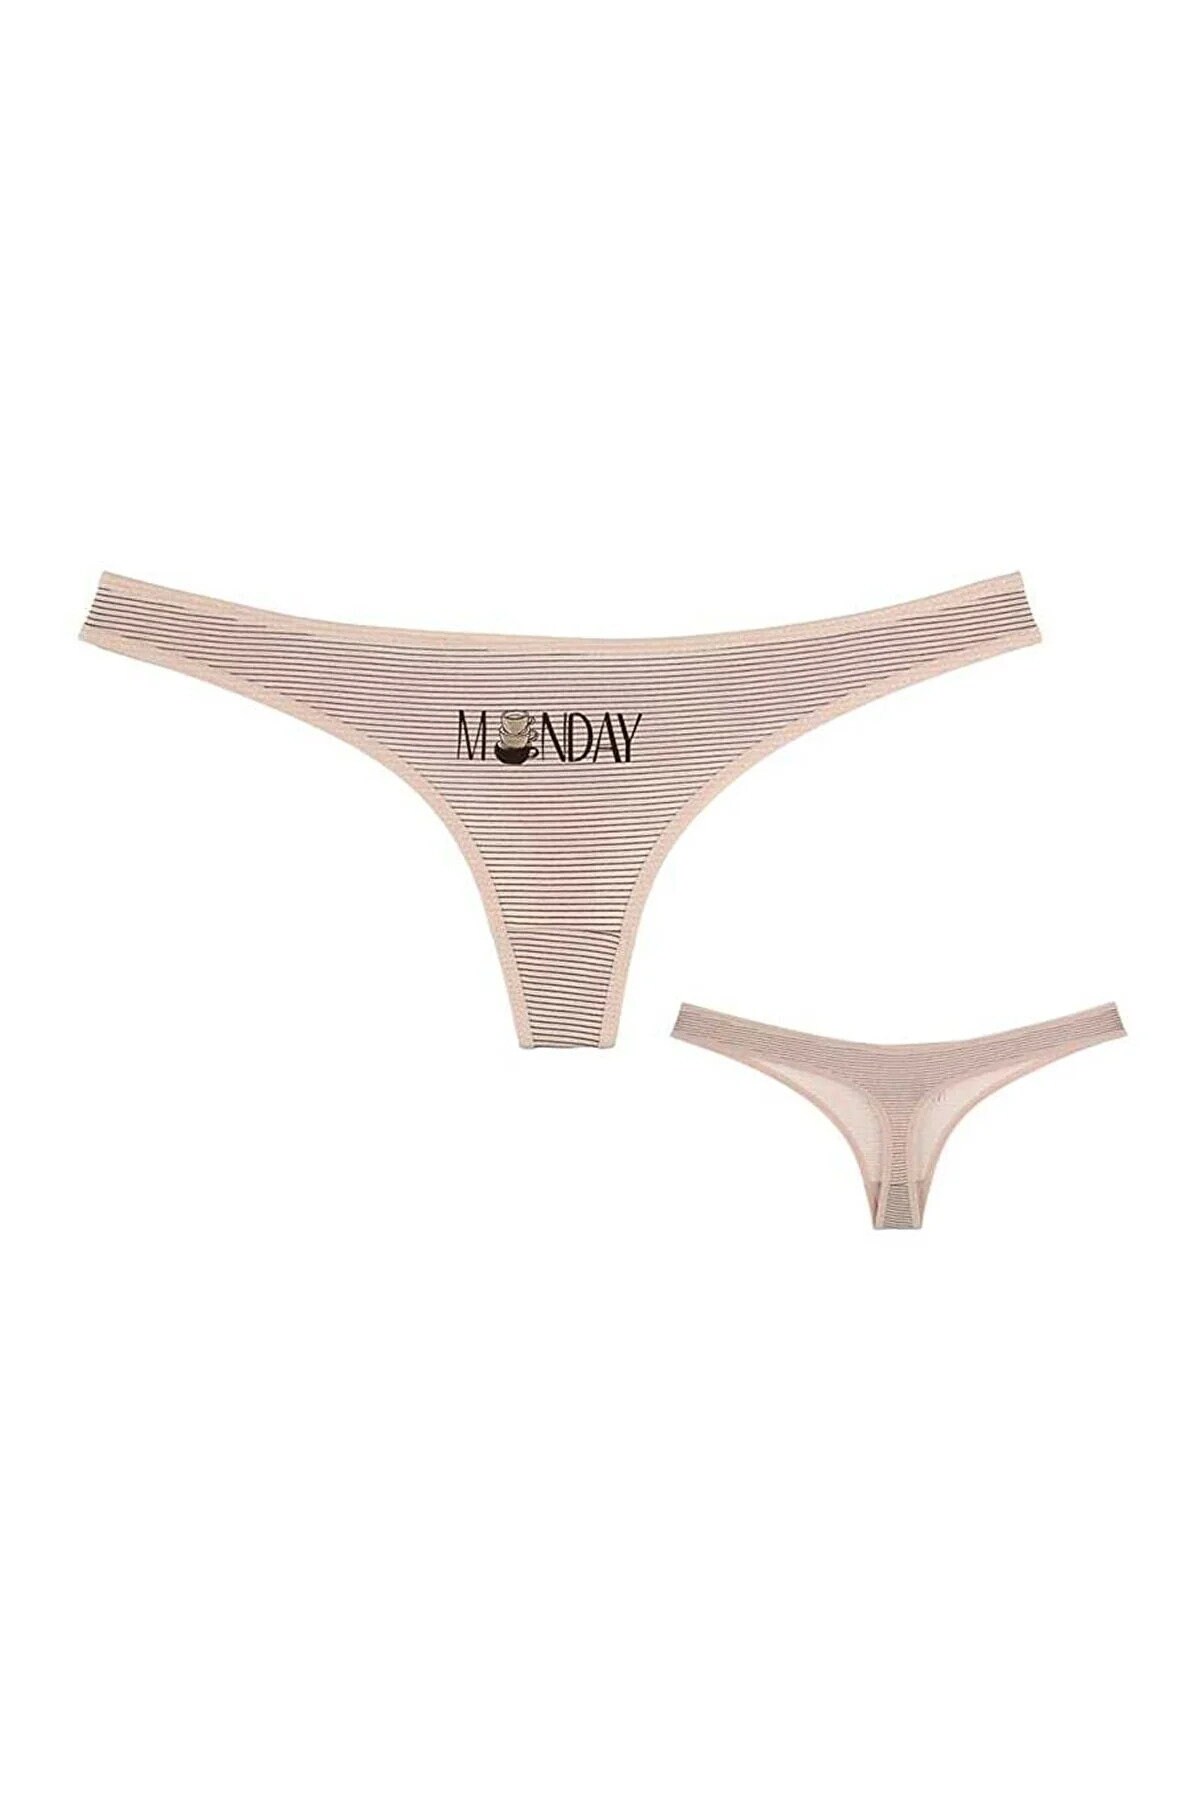 Panties / Ladies Underwear/thong /7 Days of the Week Women's Thong / Daily  Thong 